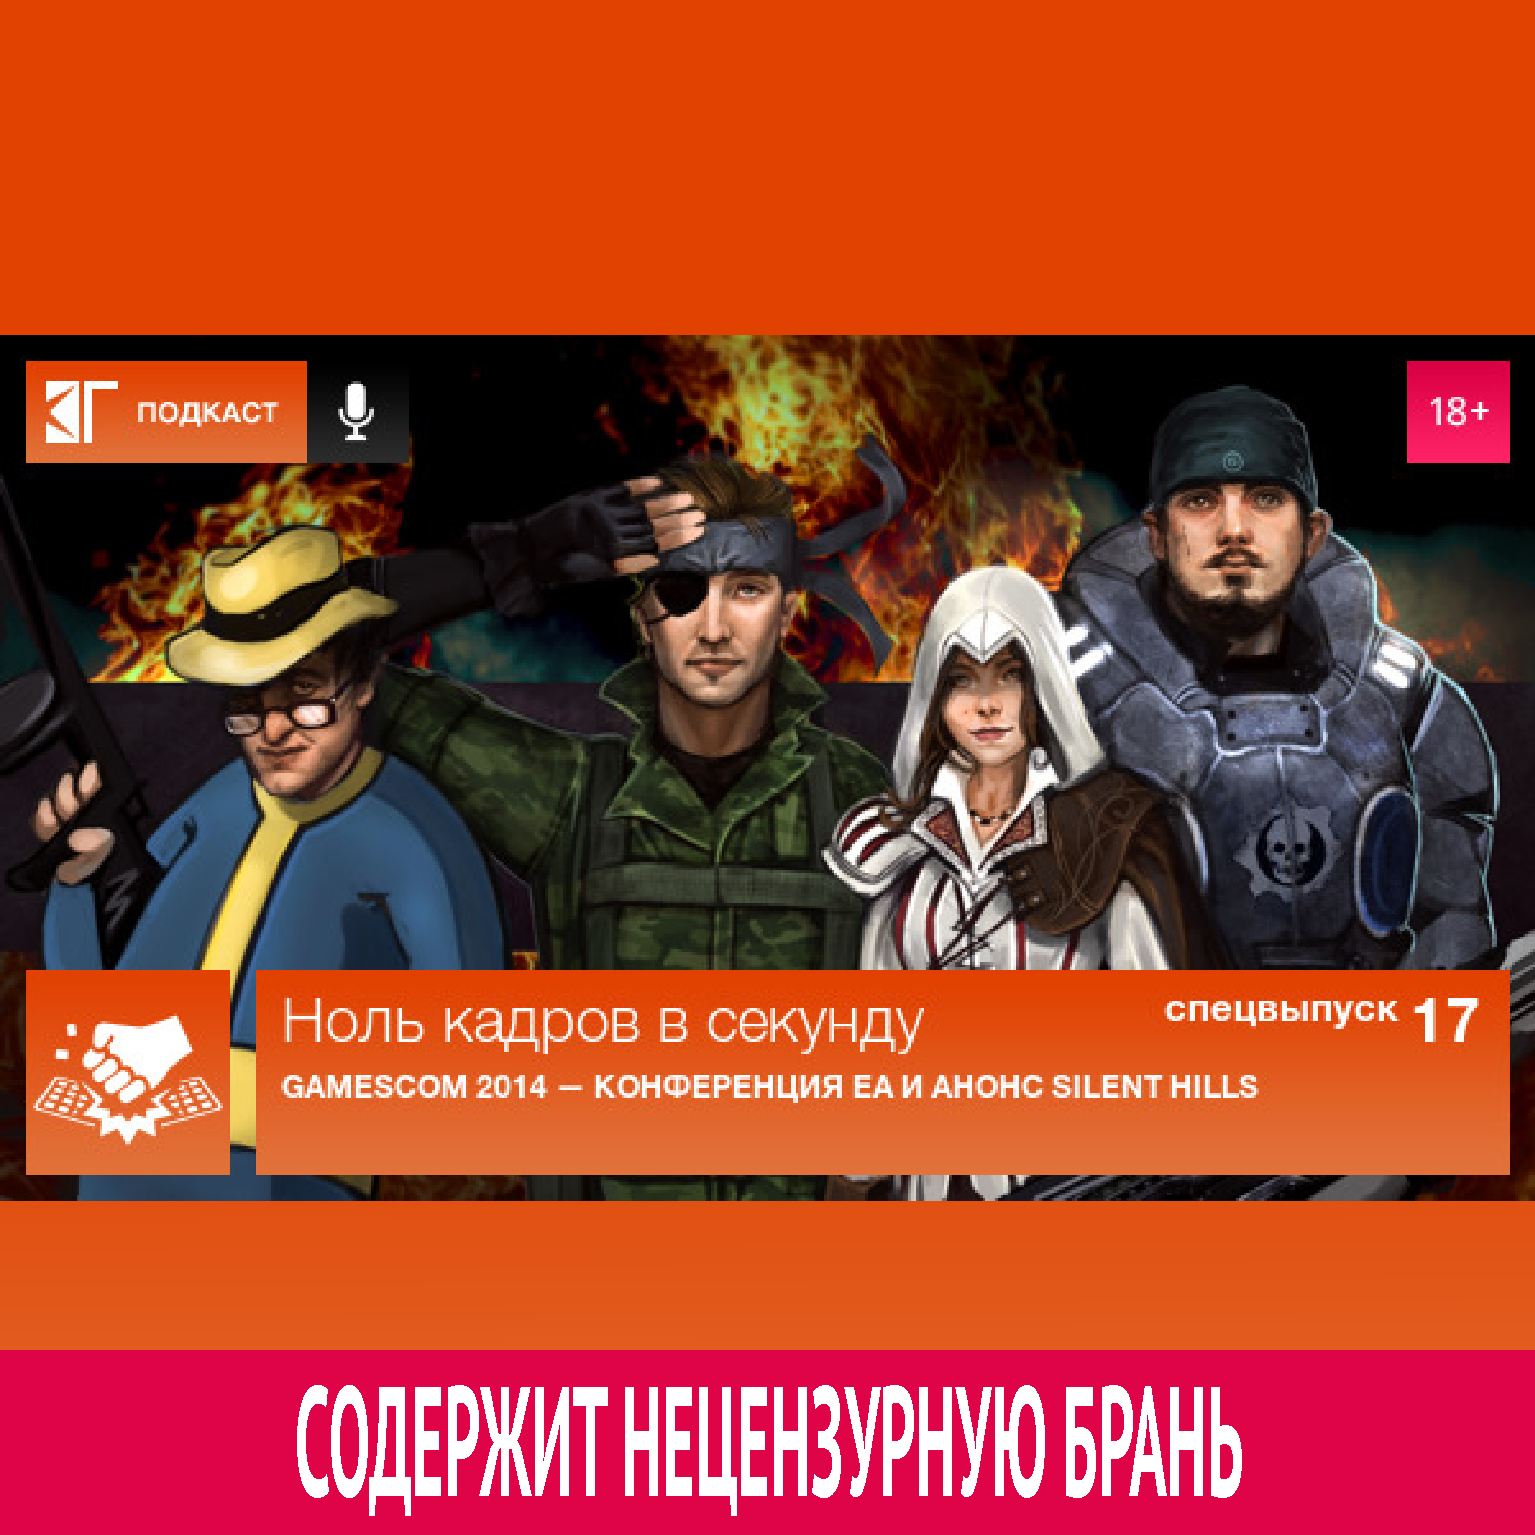 Спецвыпуск 17: Gamescom 2014 — Конференция EA и анонс Silent Hills